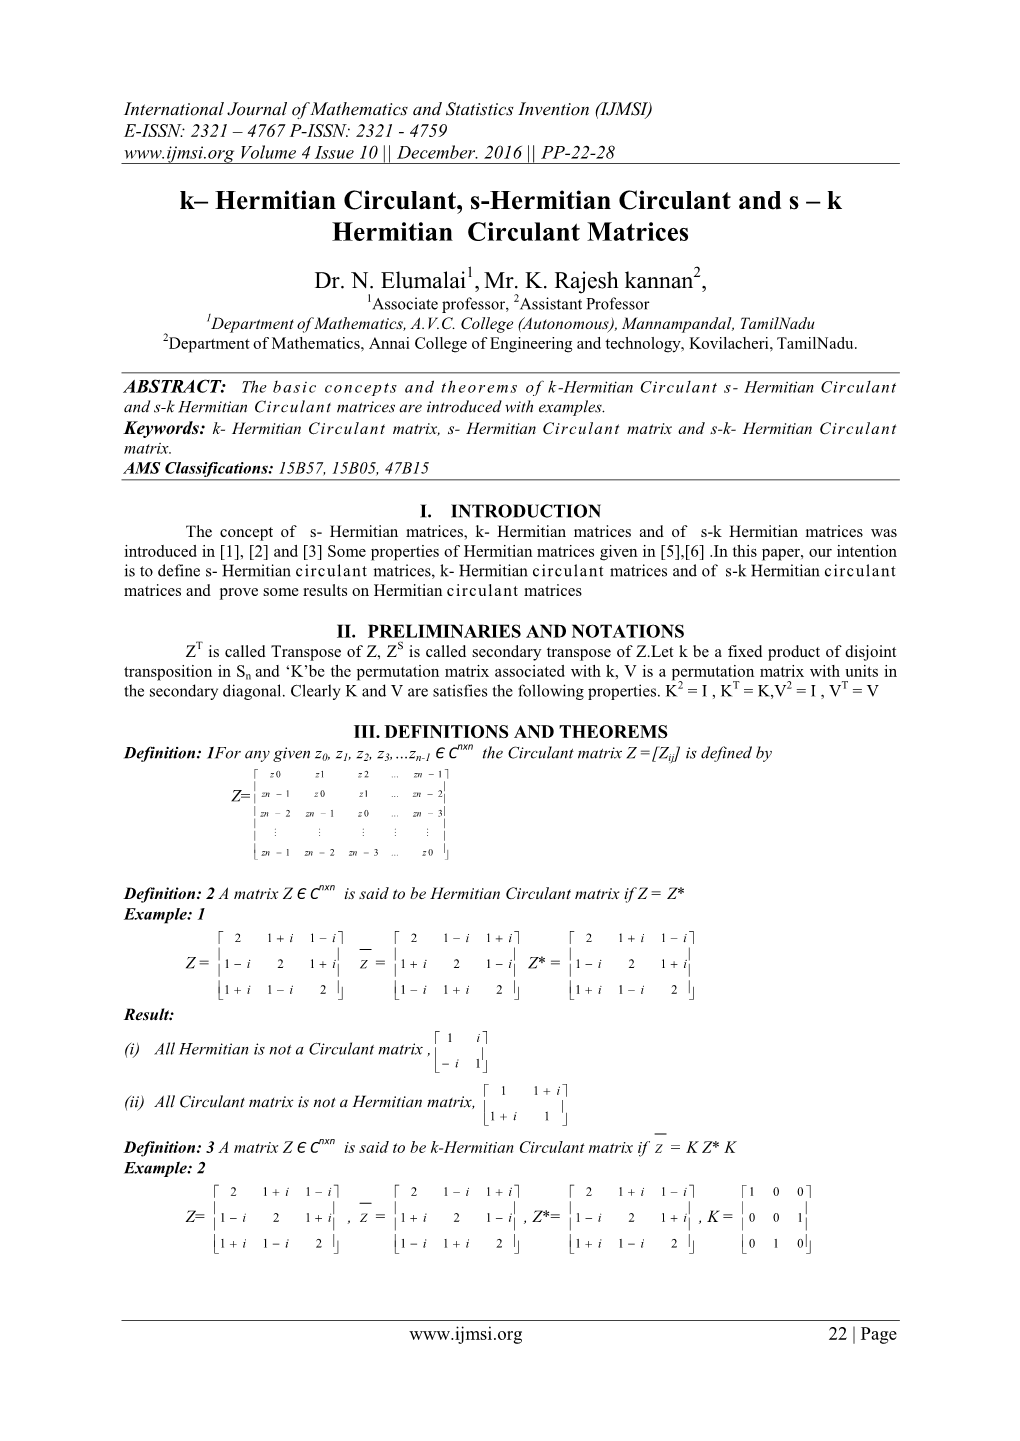 K Hermitian Circulant Matrices